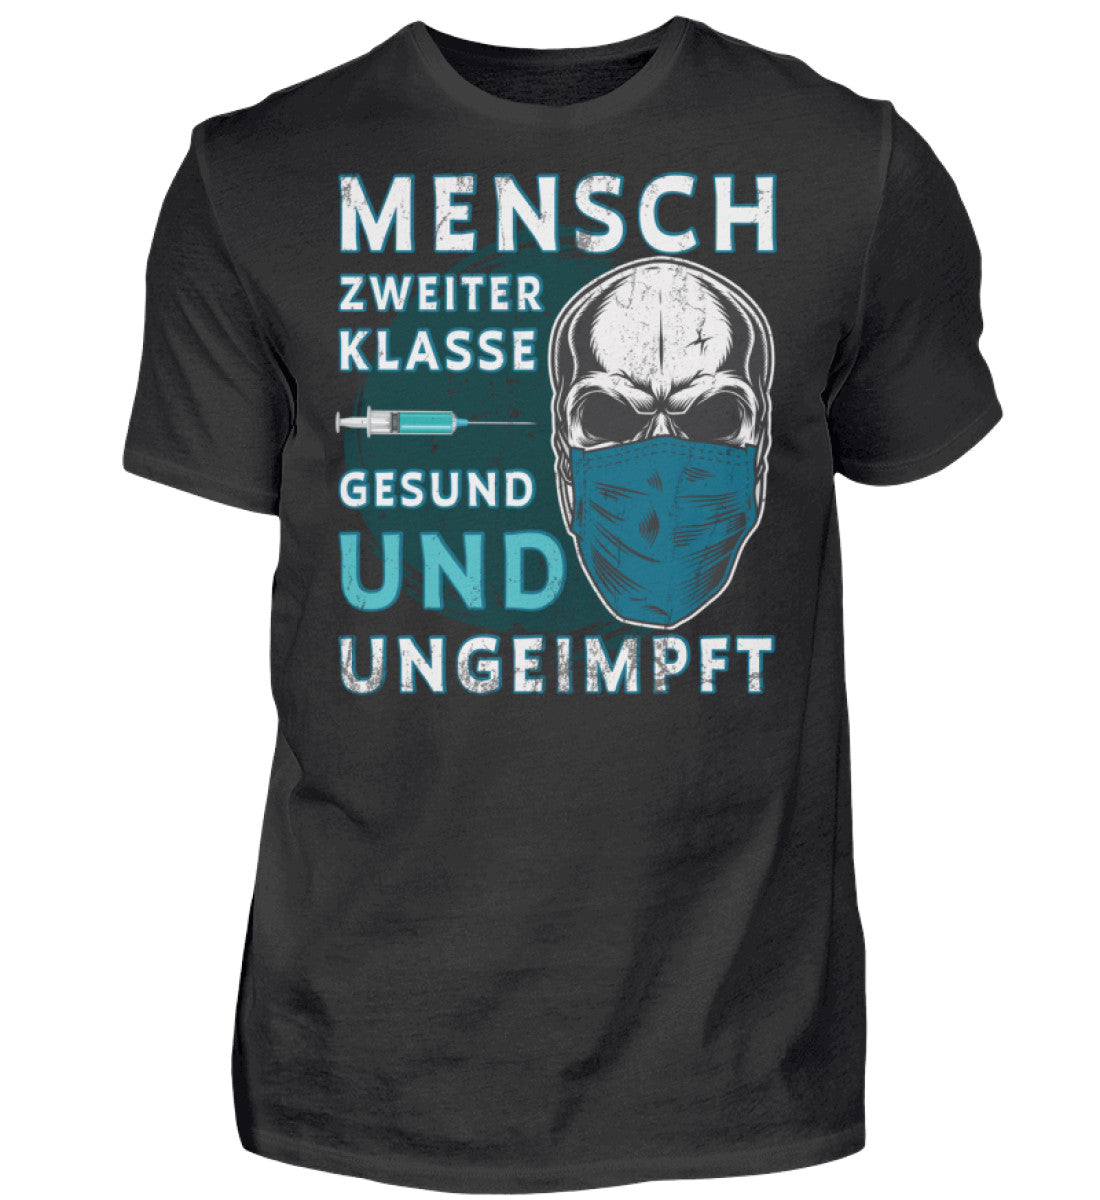 Ungeimpft Shirt / Mensch Zweiter Klasse Gesund und Ungeimpft www.geruestbauershop.de